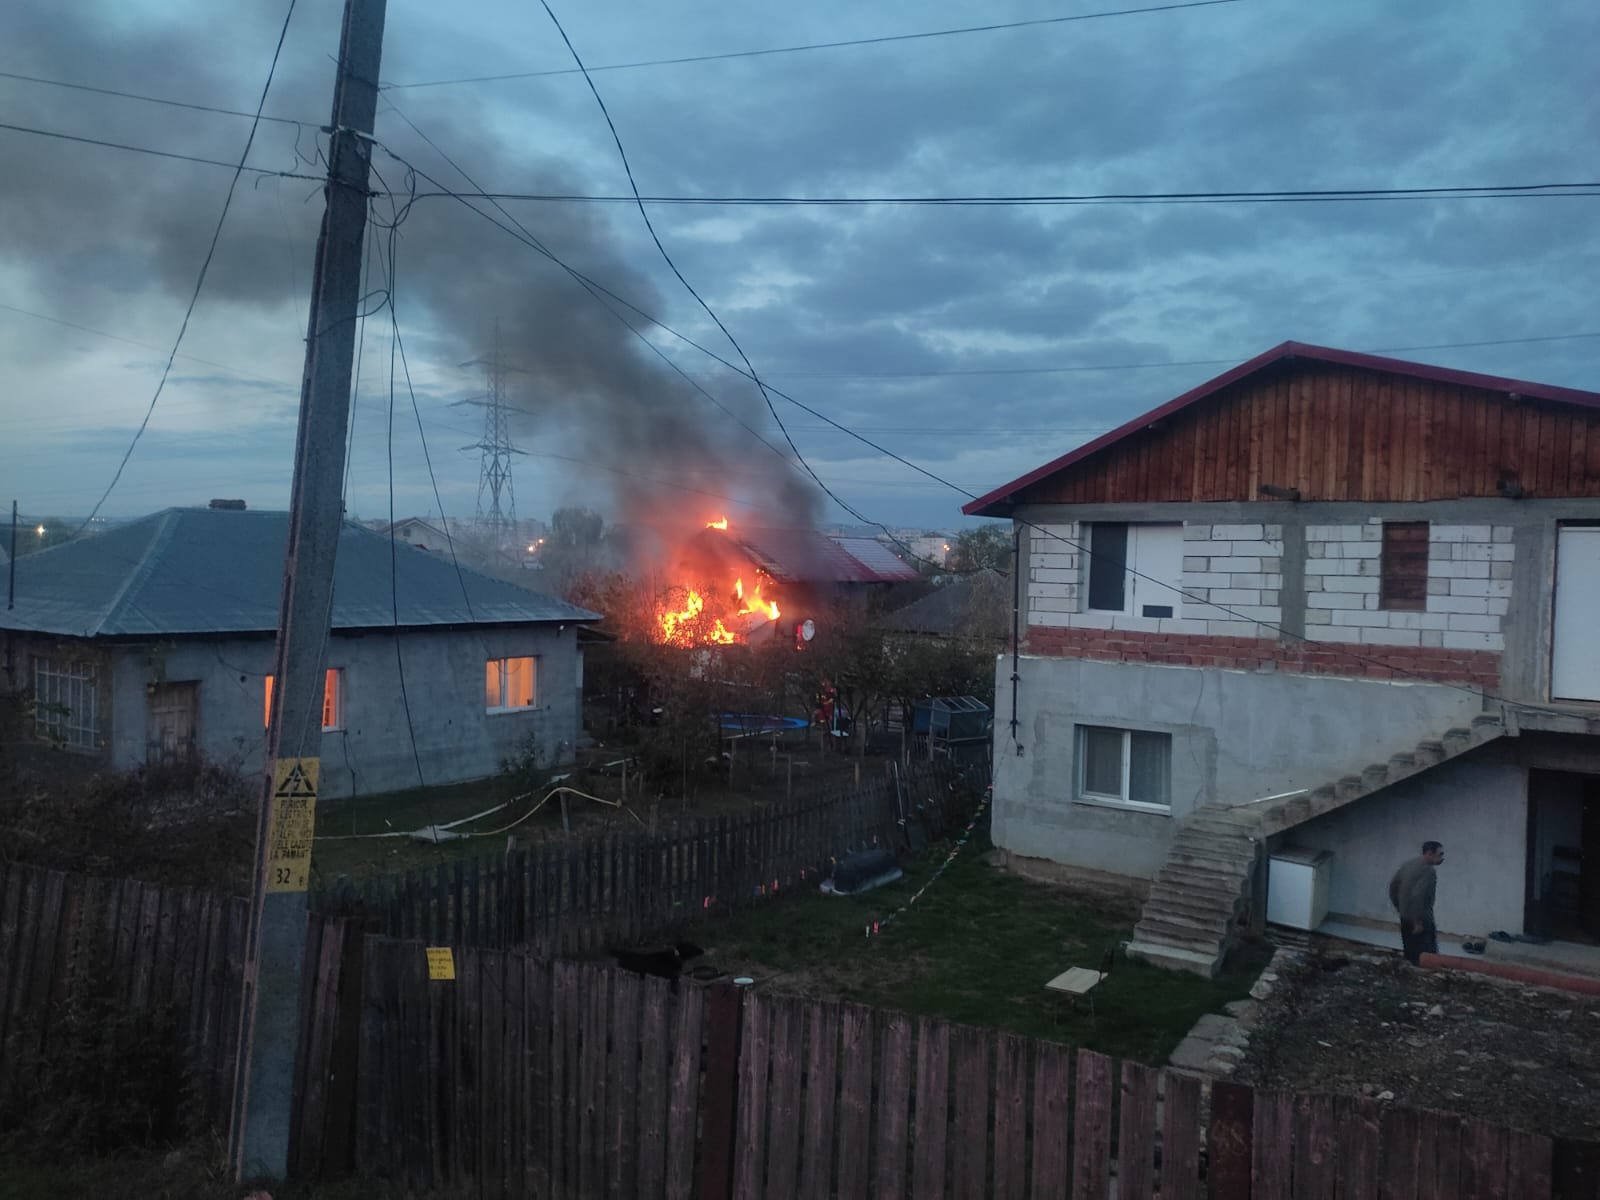  FOTO – Incendiu violent la o casă din Cicoare. O persoană a fost intoxicată cu fum